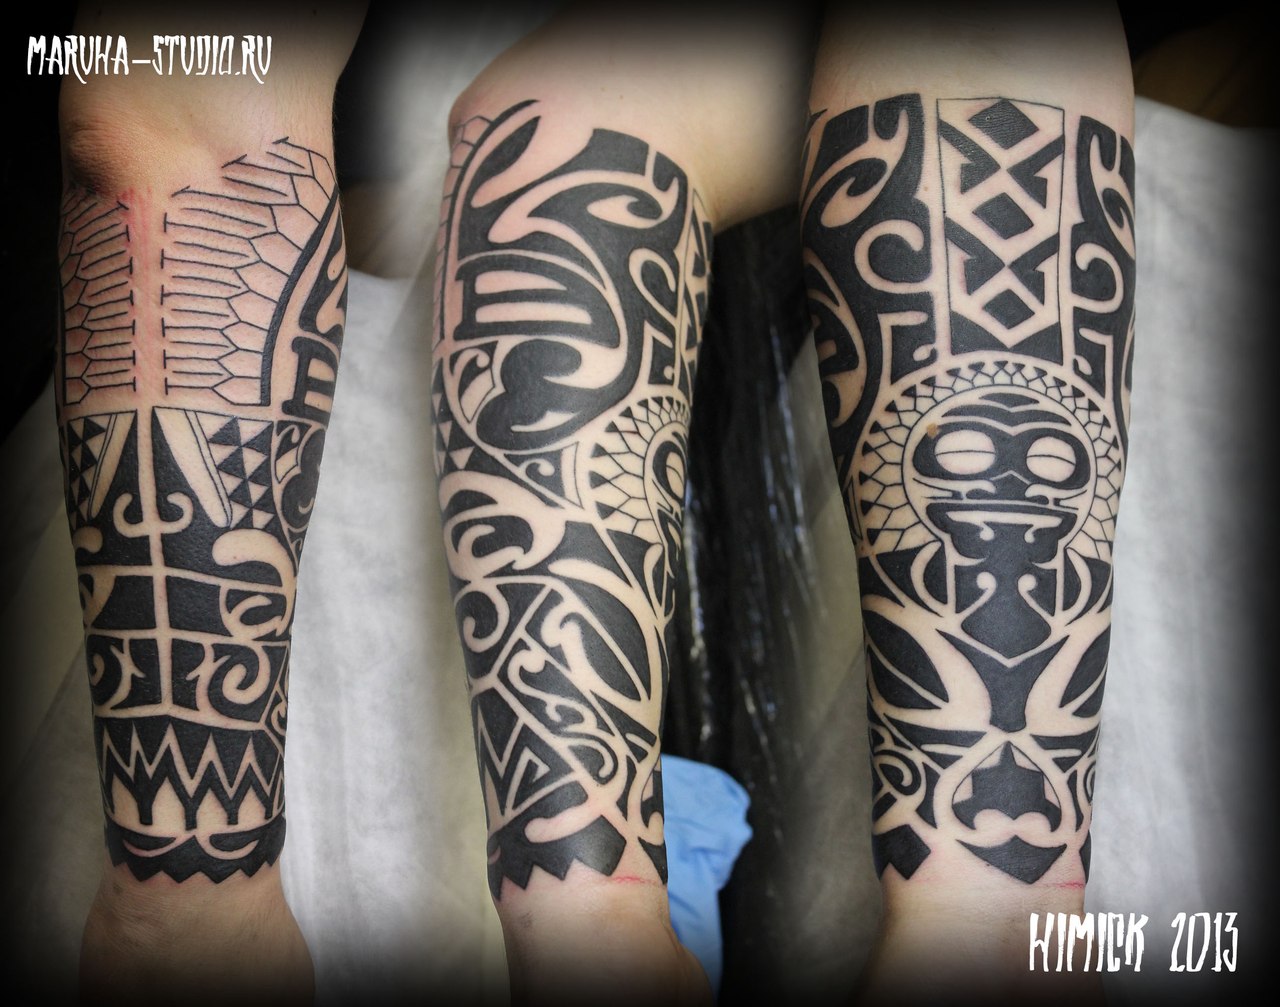 Художественная татуировка "Полинезия" от Евгения Химика.